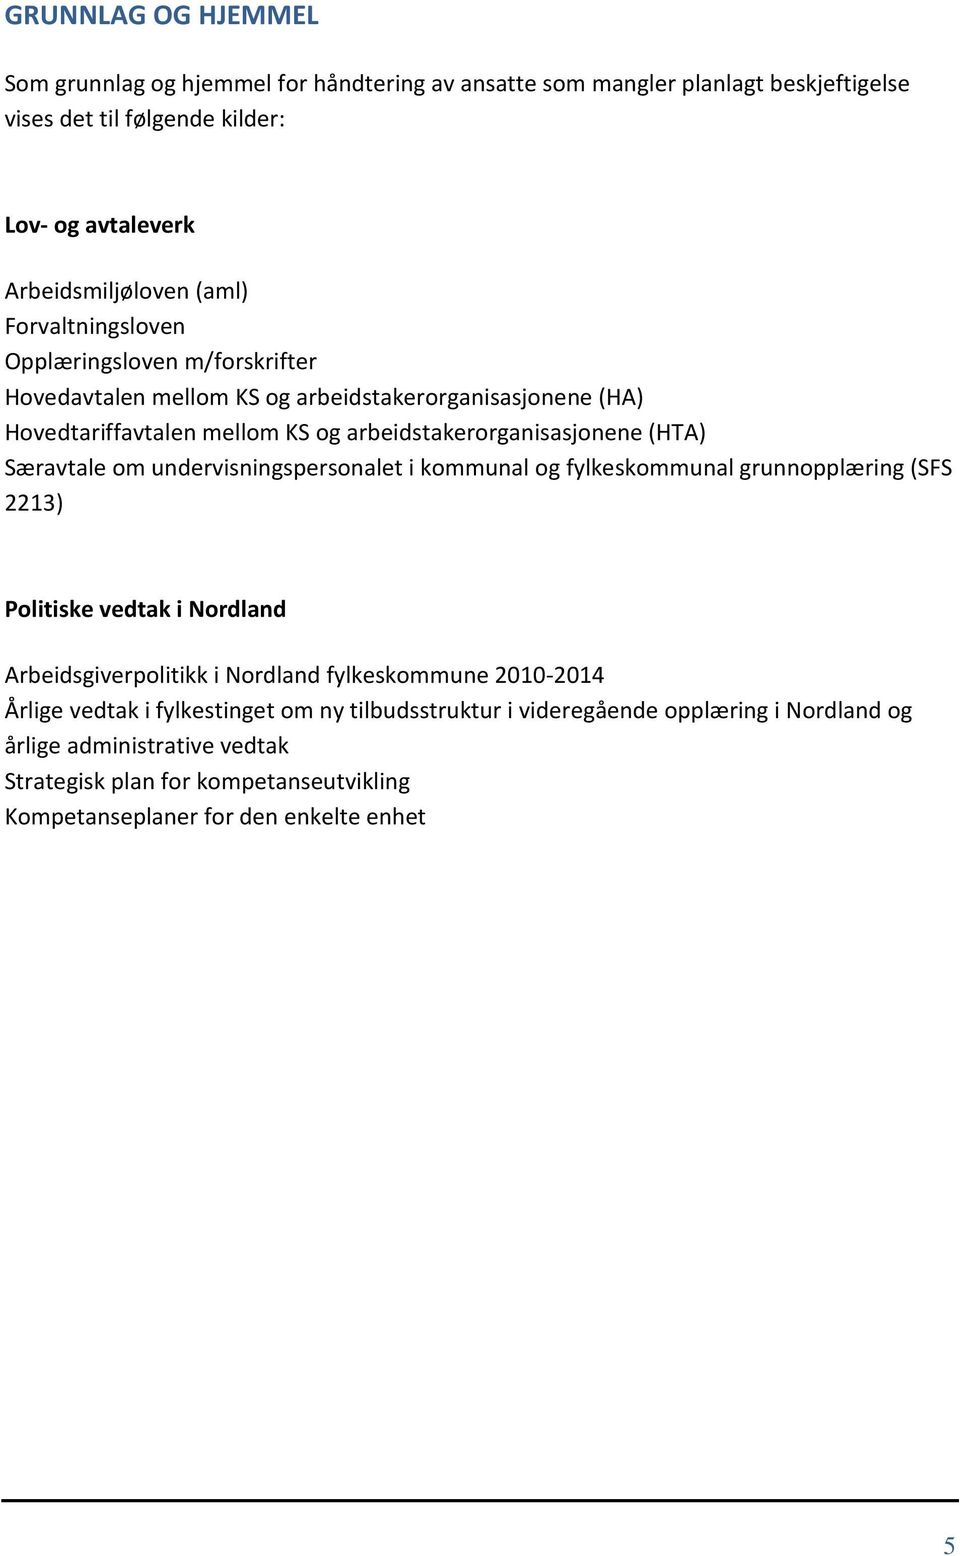 Særavtale om undervisningspersonalet i kommunal og fylkeskommunal grunnopplæring (SFS 2213) Politiske vedtak i Nordland Arbeidsgiverpolitikk i Nordland fylkeskommune 2010-2014